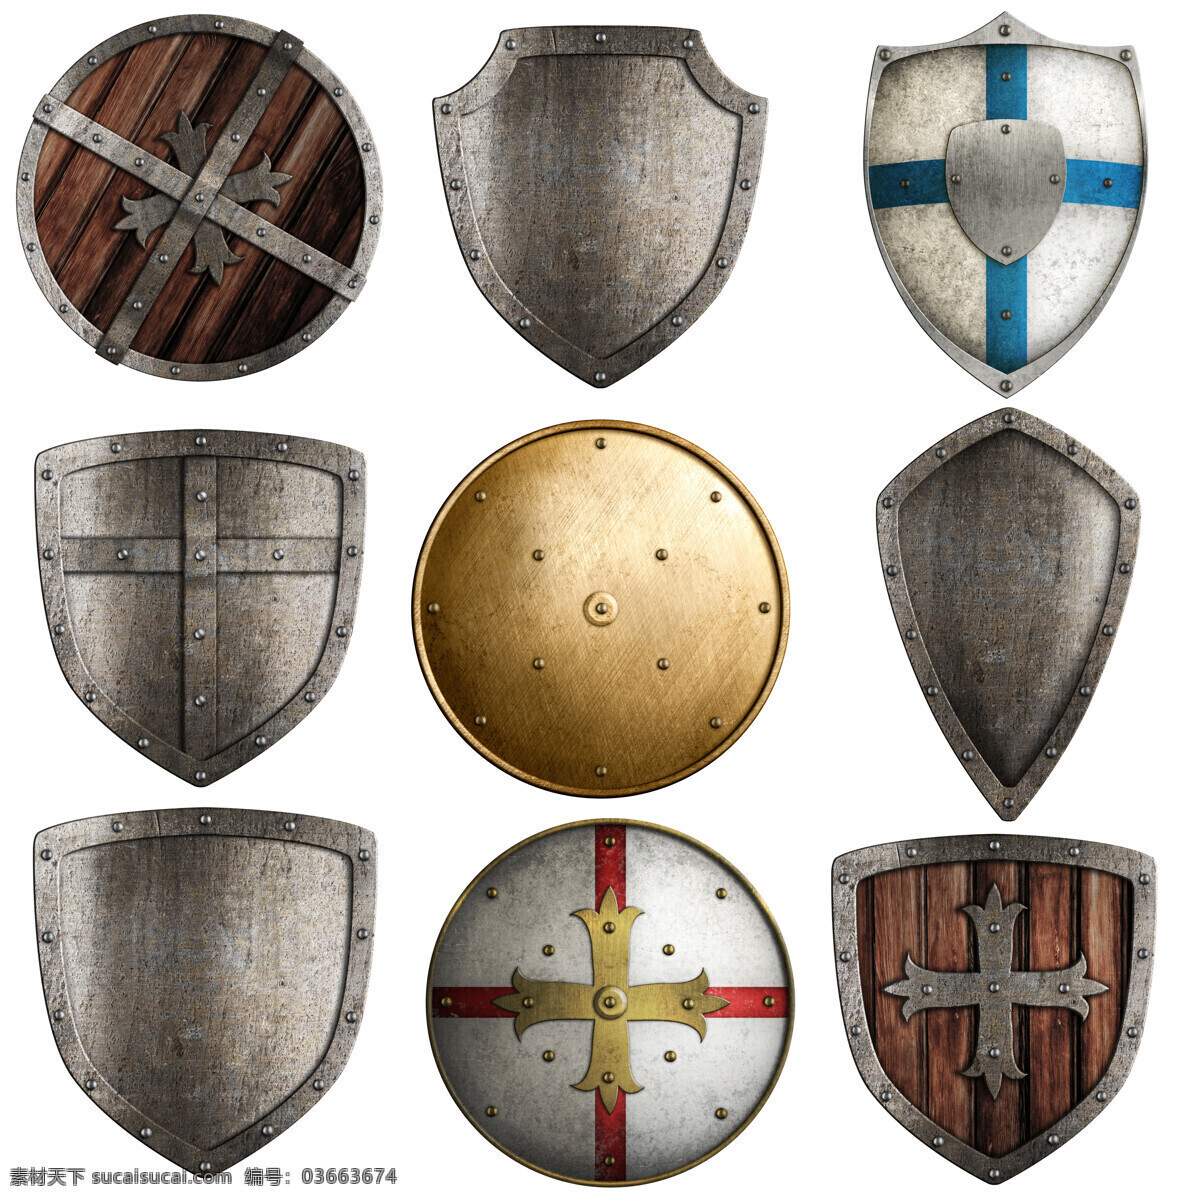 怀旧 盾牌 古代盾牌 军事装备 木板盾牌 金属盾牌 金色盾牌 其他类别 生活百科